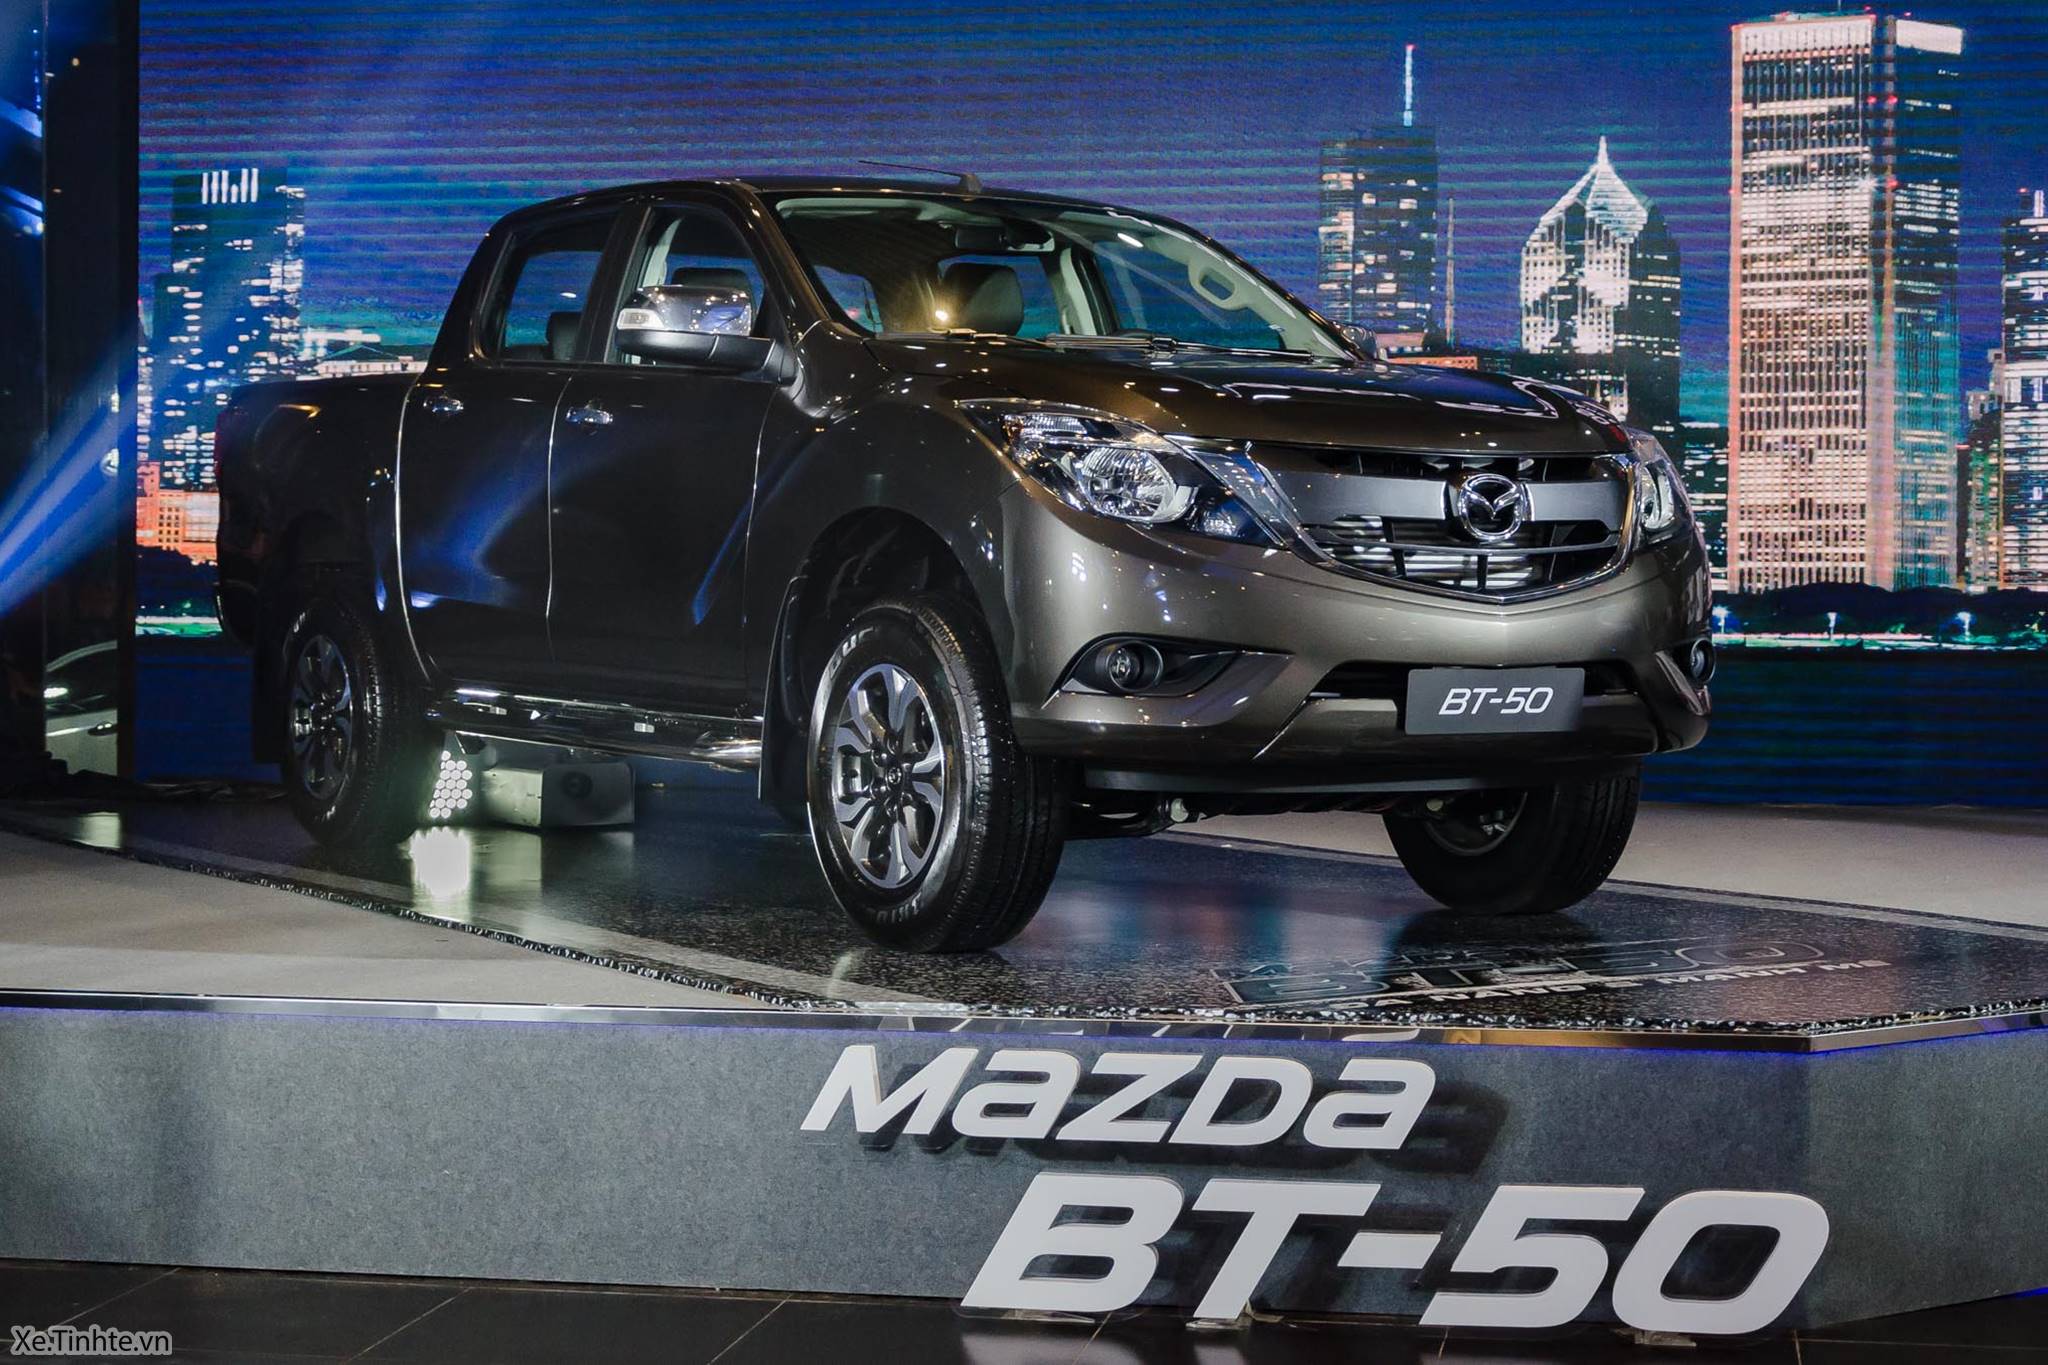 Mazda_BT-50_2018_Xe_Tinhte_DSC_6358.jpg